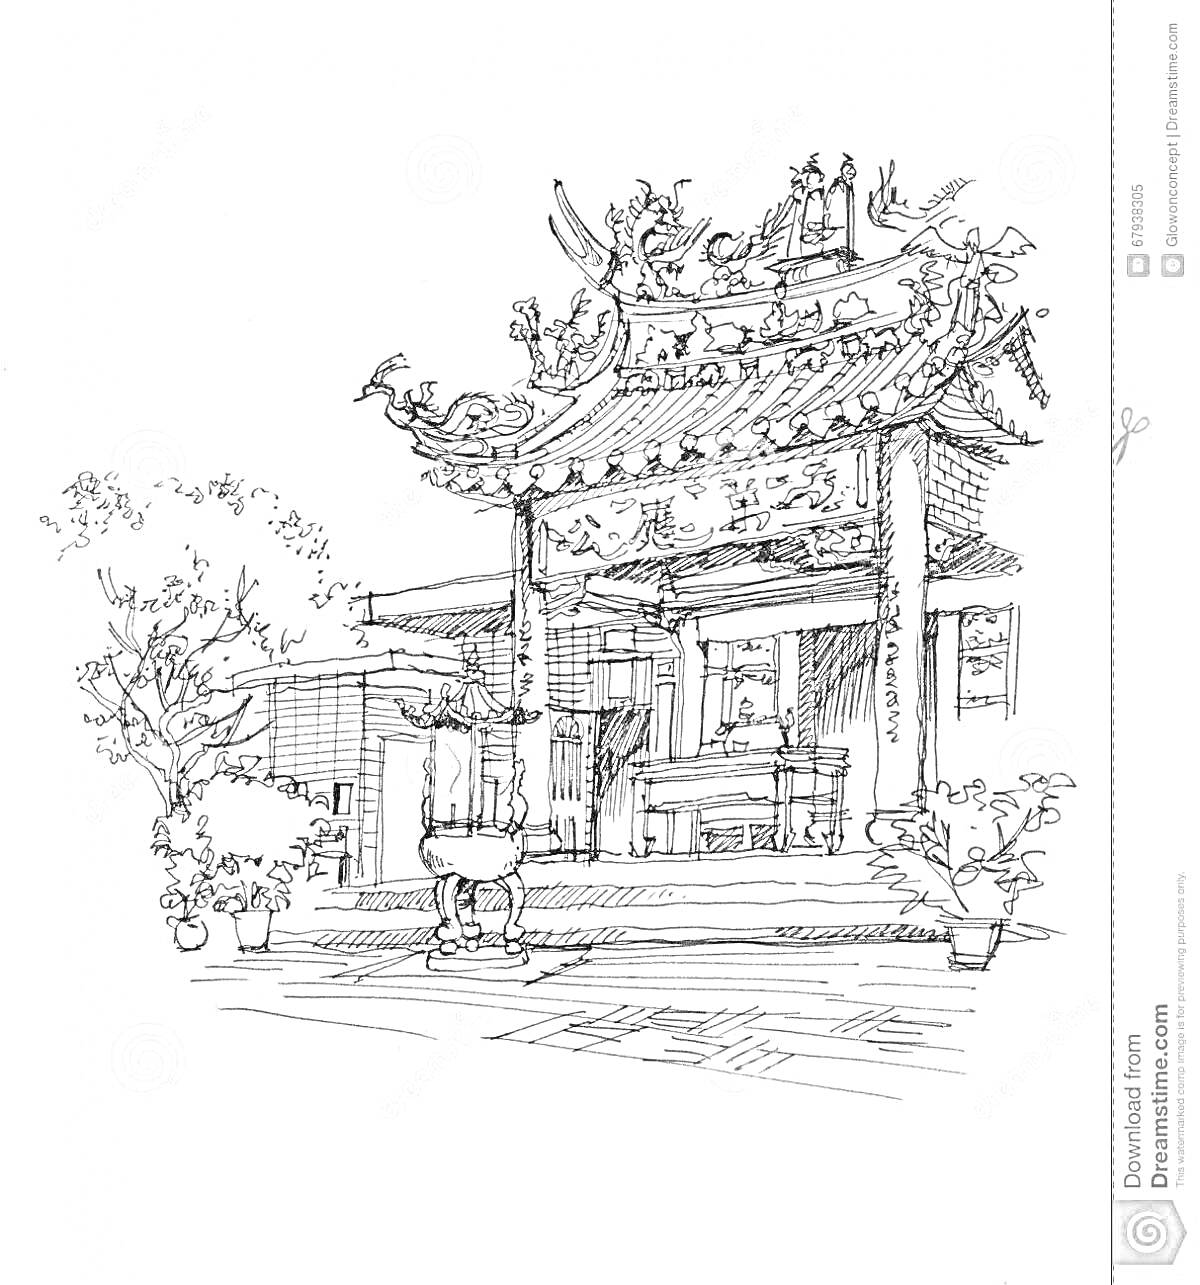 Раскраска Китайский дом с традиционной архитектурой, декорированный драконами, с колоннами и растениями в горшках на переднем плане